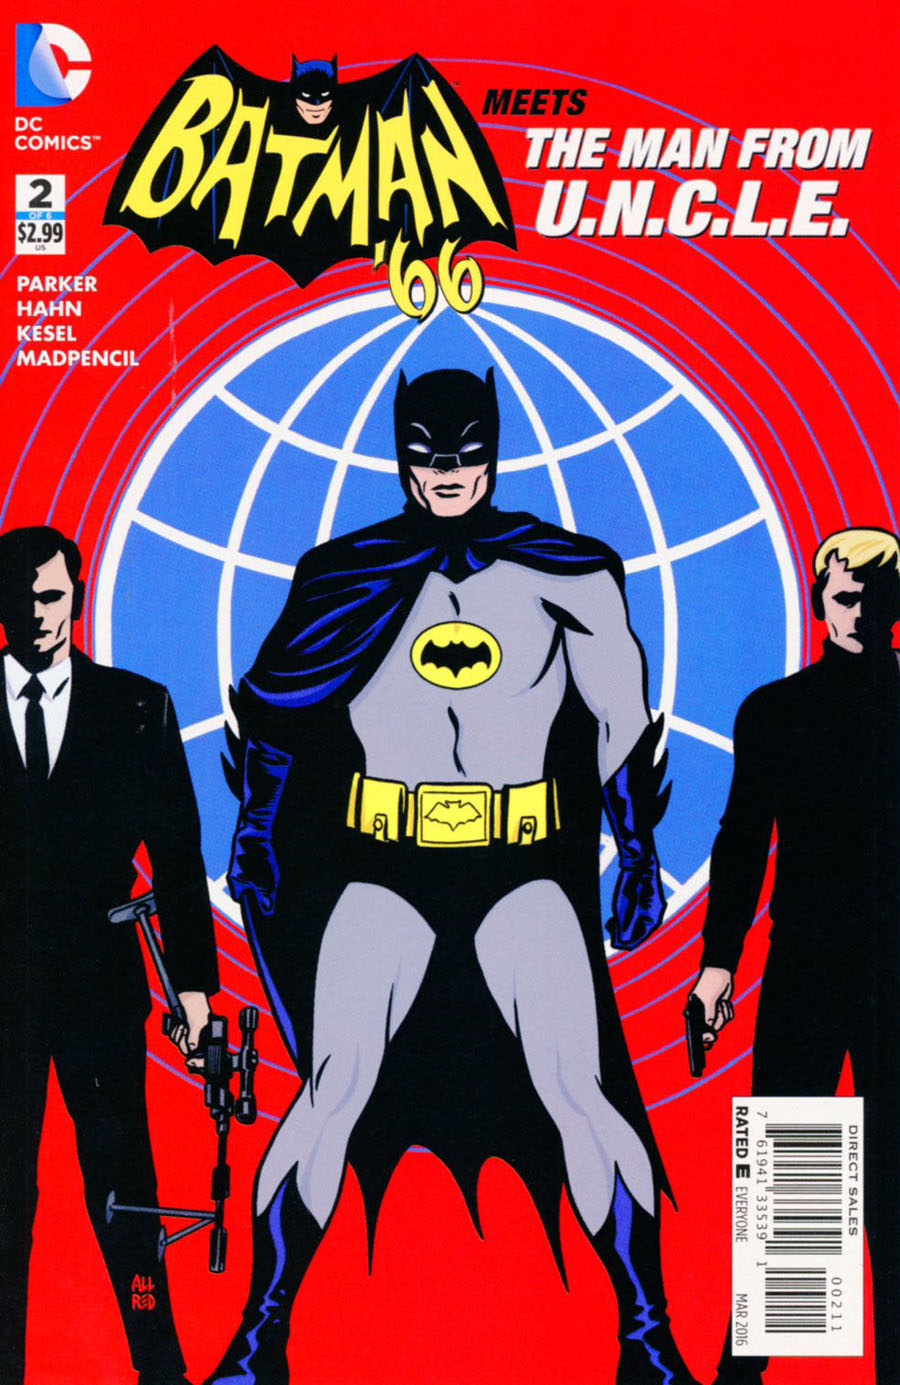 Batman 66 Meets The Man From U.N.C.L.E. #2